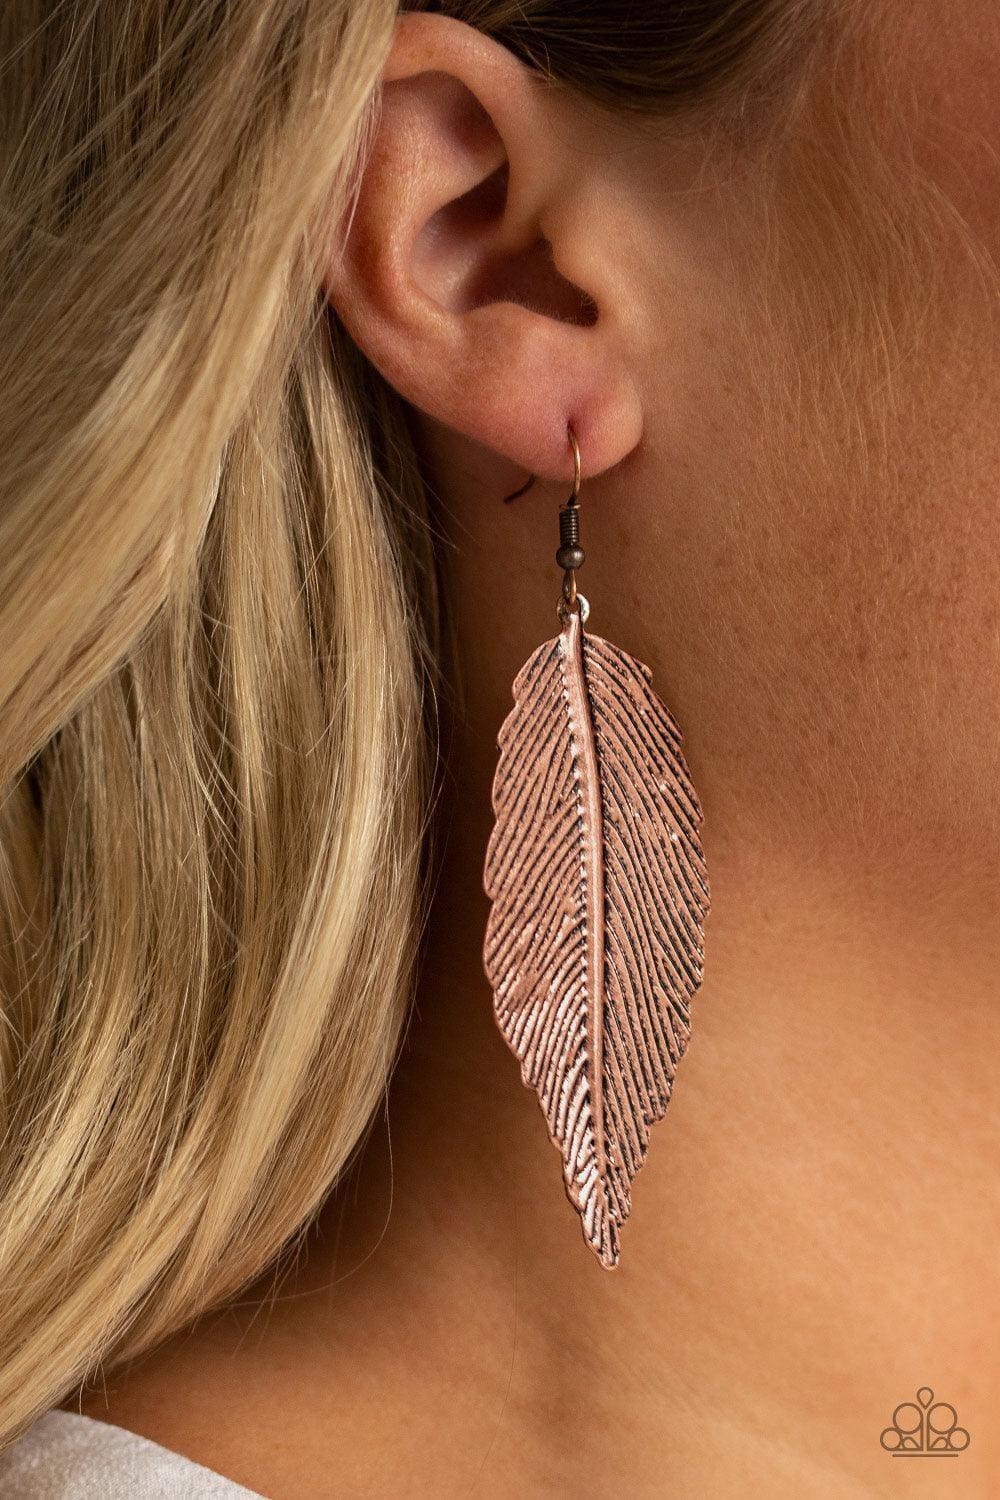 Paparazzi Accessories - Lookin For a Flight - Copper Earring - Bling by JessieK